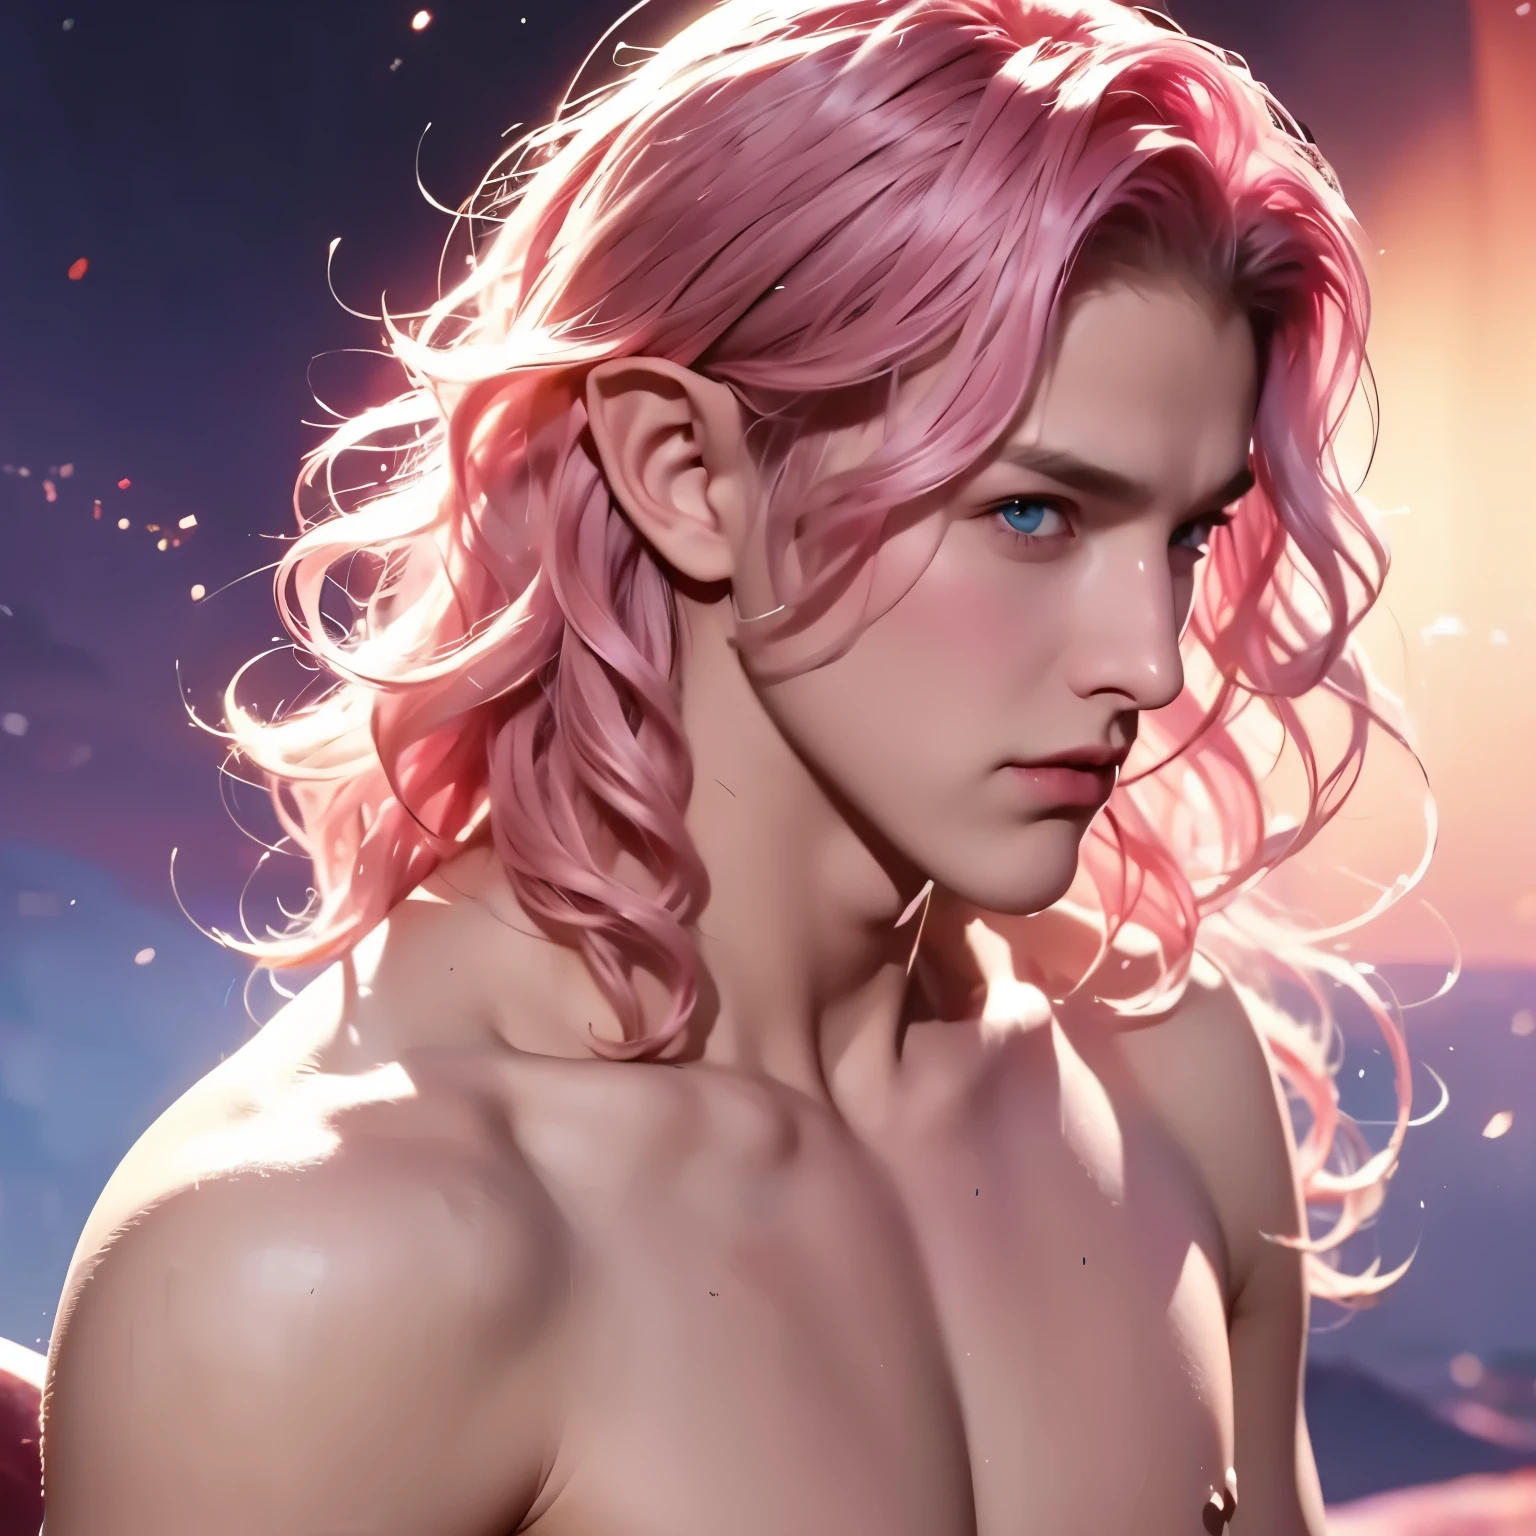 男, 若い, 男の子, 短いウェーブヘア, ピンクの髪, 青い目, 妖精, 上半身裸, 中世の背景